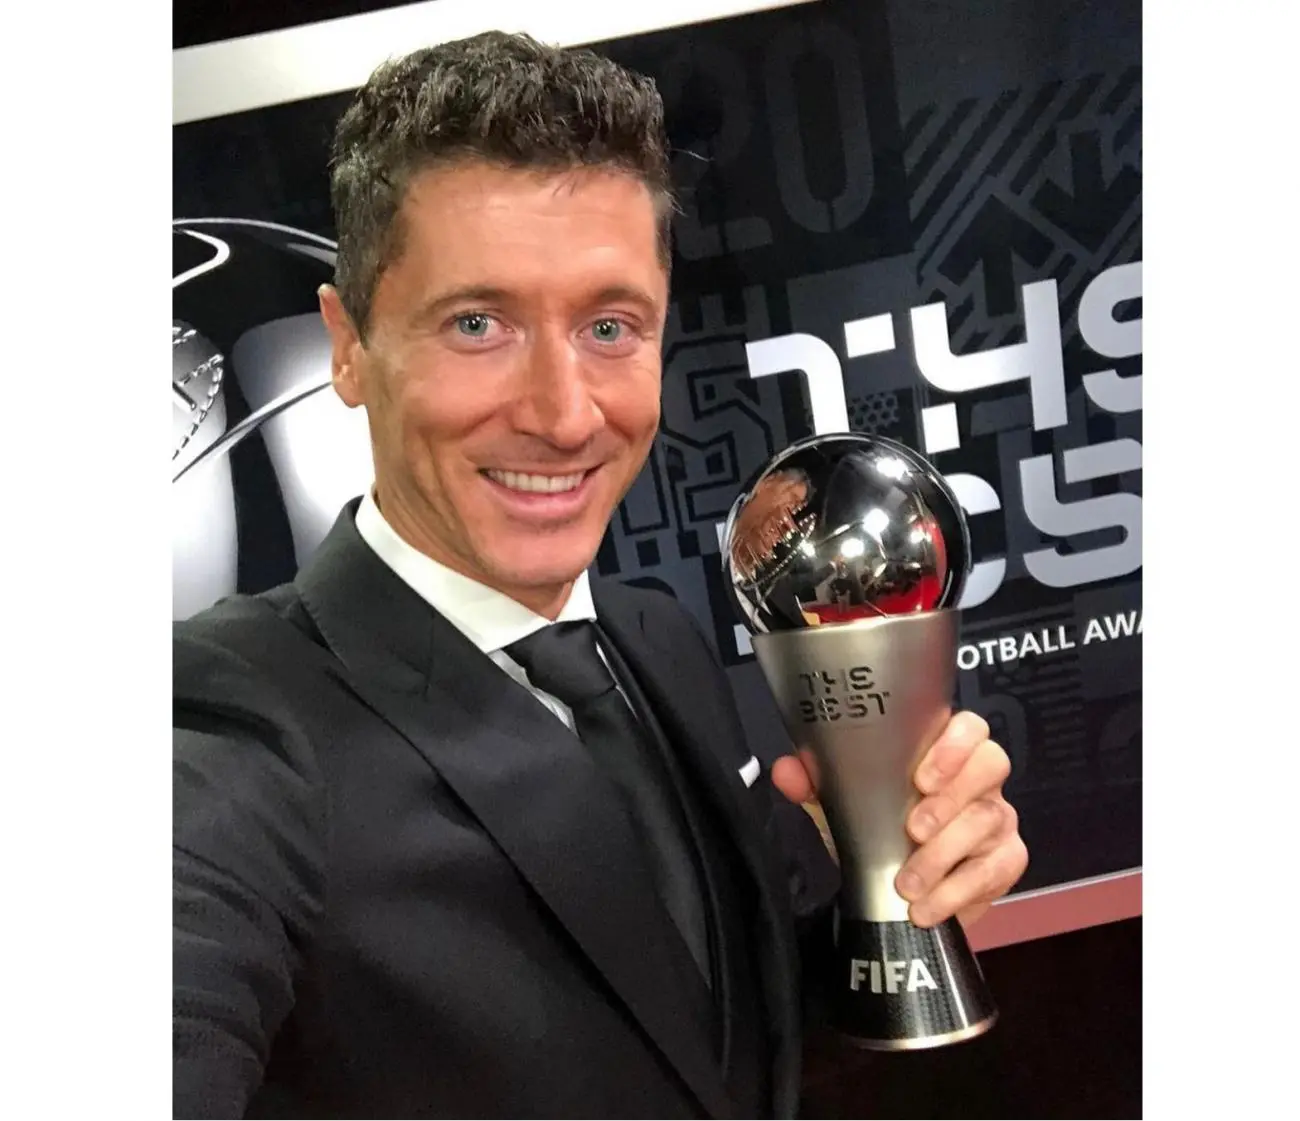 Fifa anuncia os finalistas ao prêmio de melhor goleiro do mundo